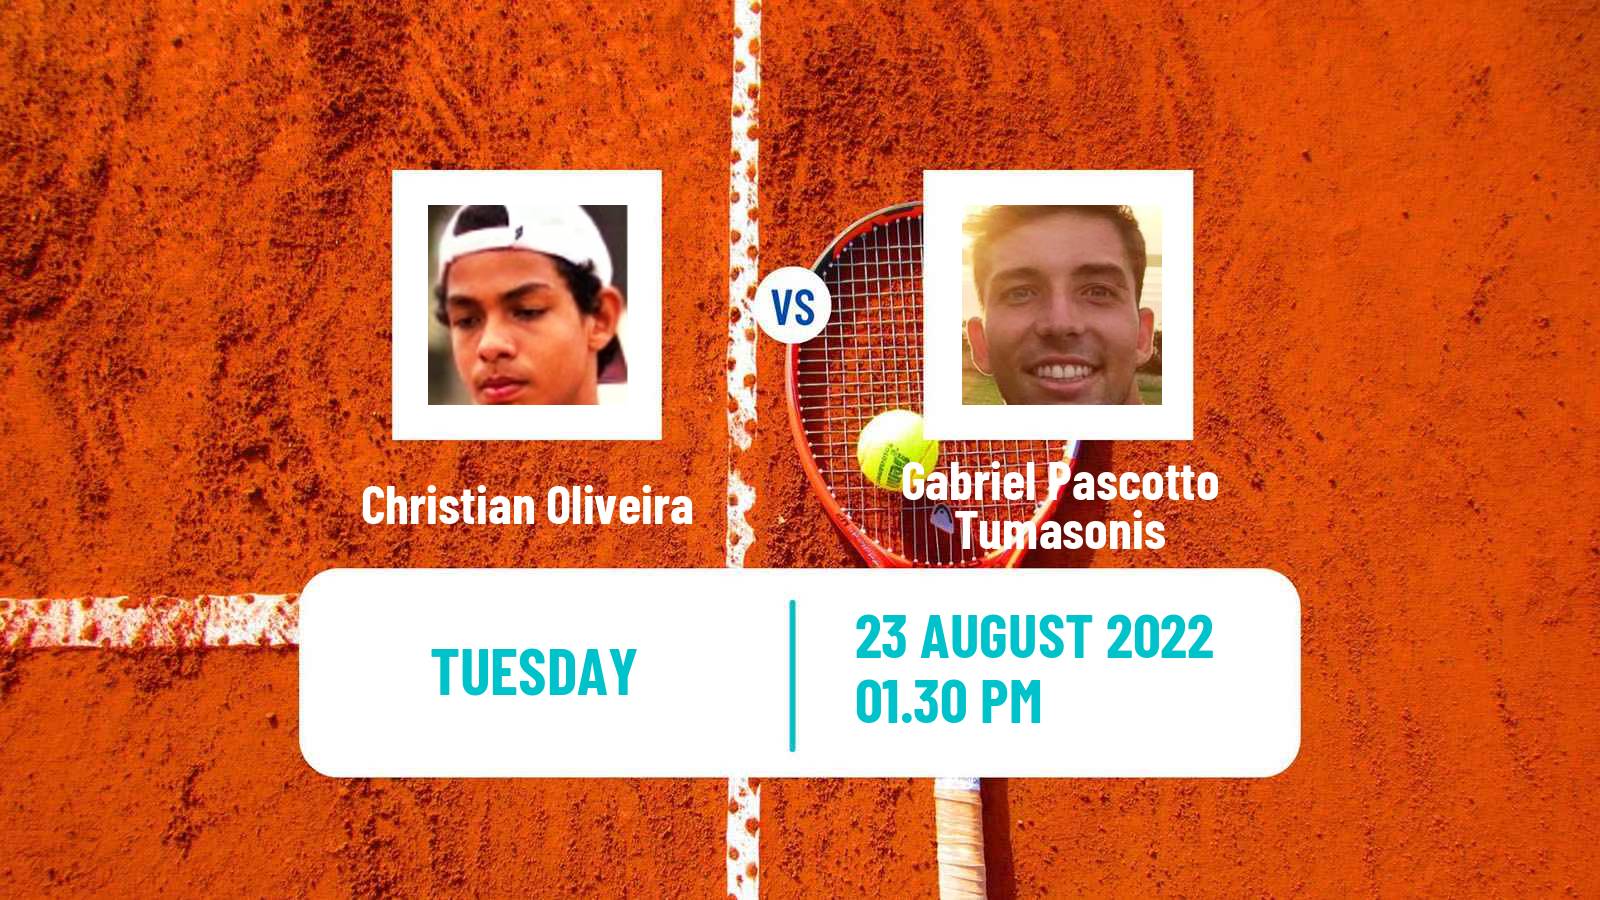 Tennis ITF Tournaments Christian Oliveira - Gabriel Pascotto Tumasonis